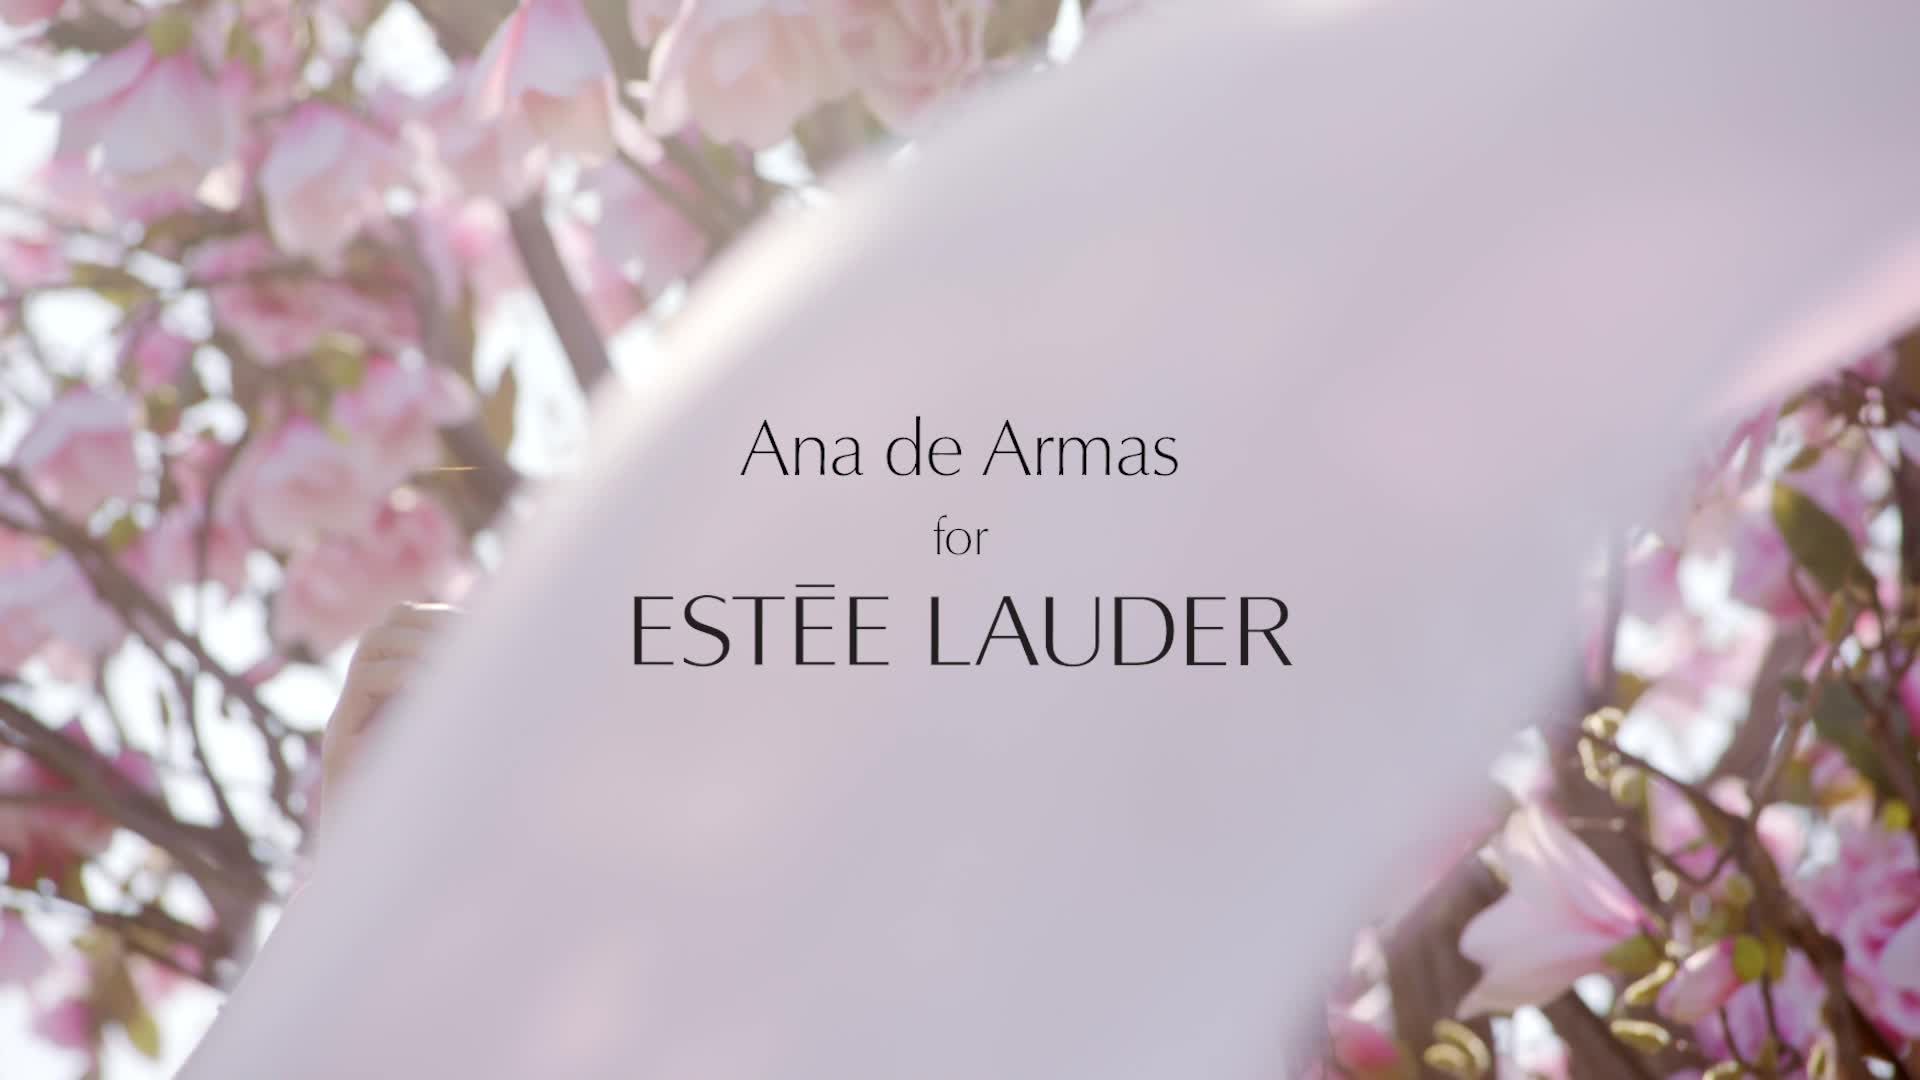 Ana de Armas Is the New Face of Esteé Lauder